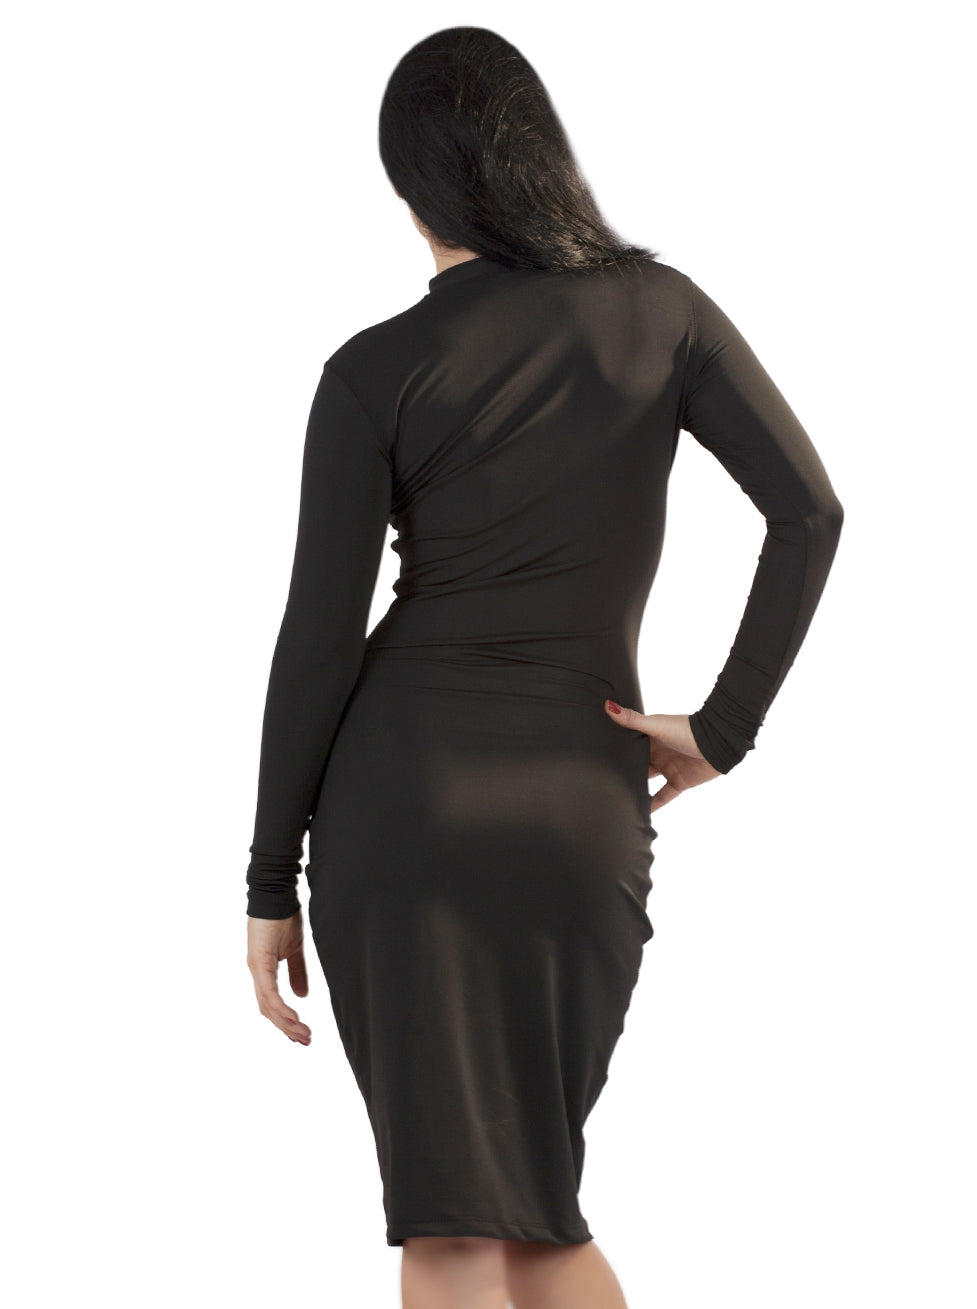 Black Wetlook Pencil Dress - Honour Clothing